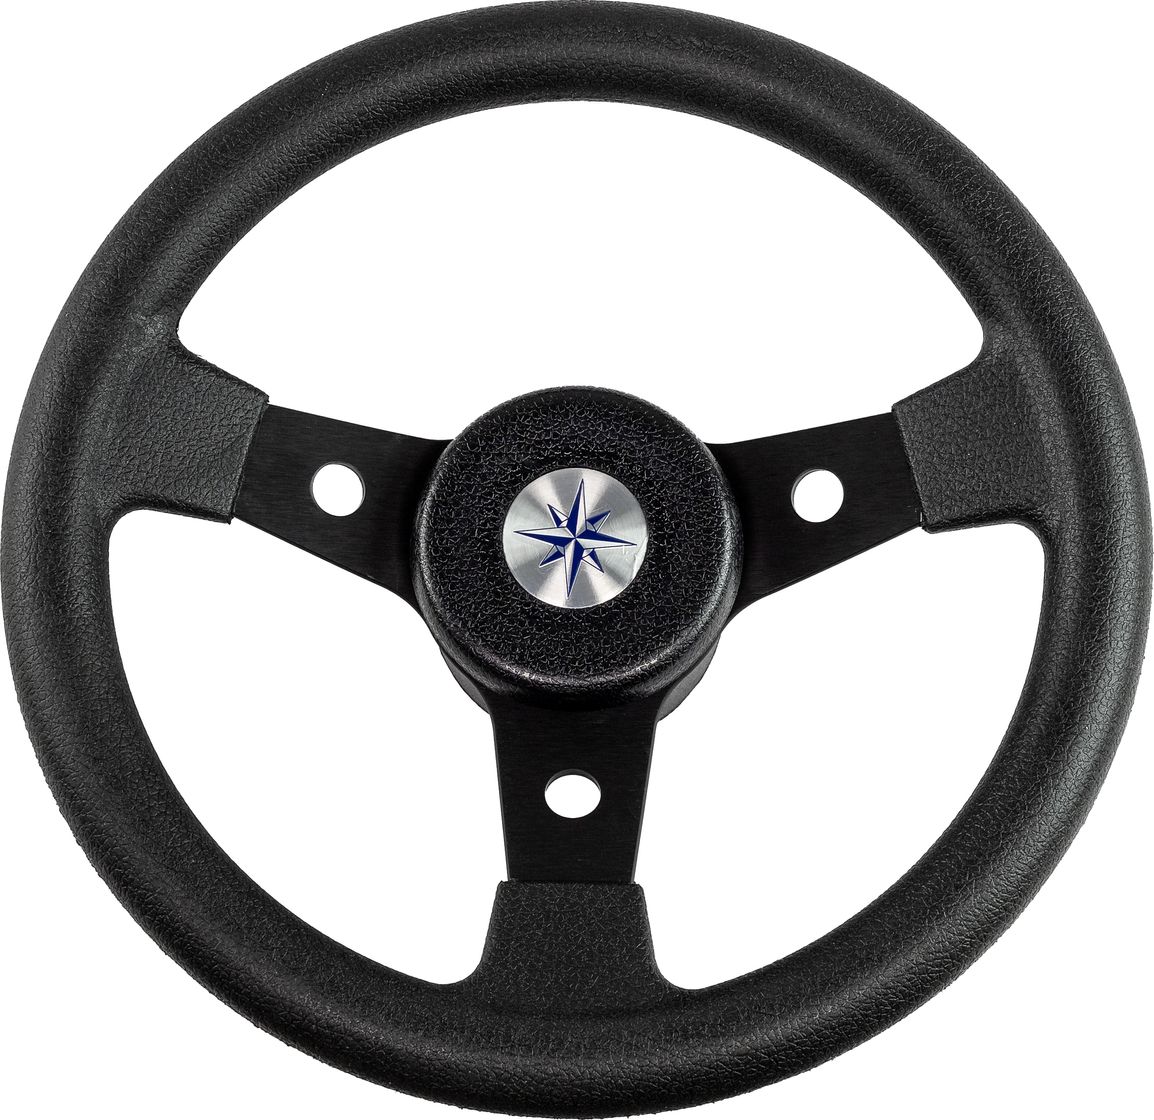 Рулевое колесо DELFINO обод и спицы черные д. 310 мм VN70104-01 рулевое колесо riviera обод и спицы д 350 мм vn8001 01